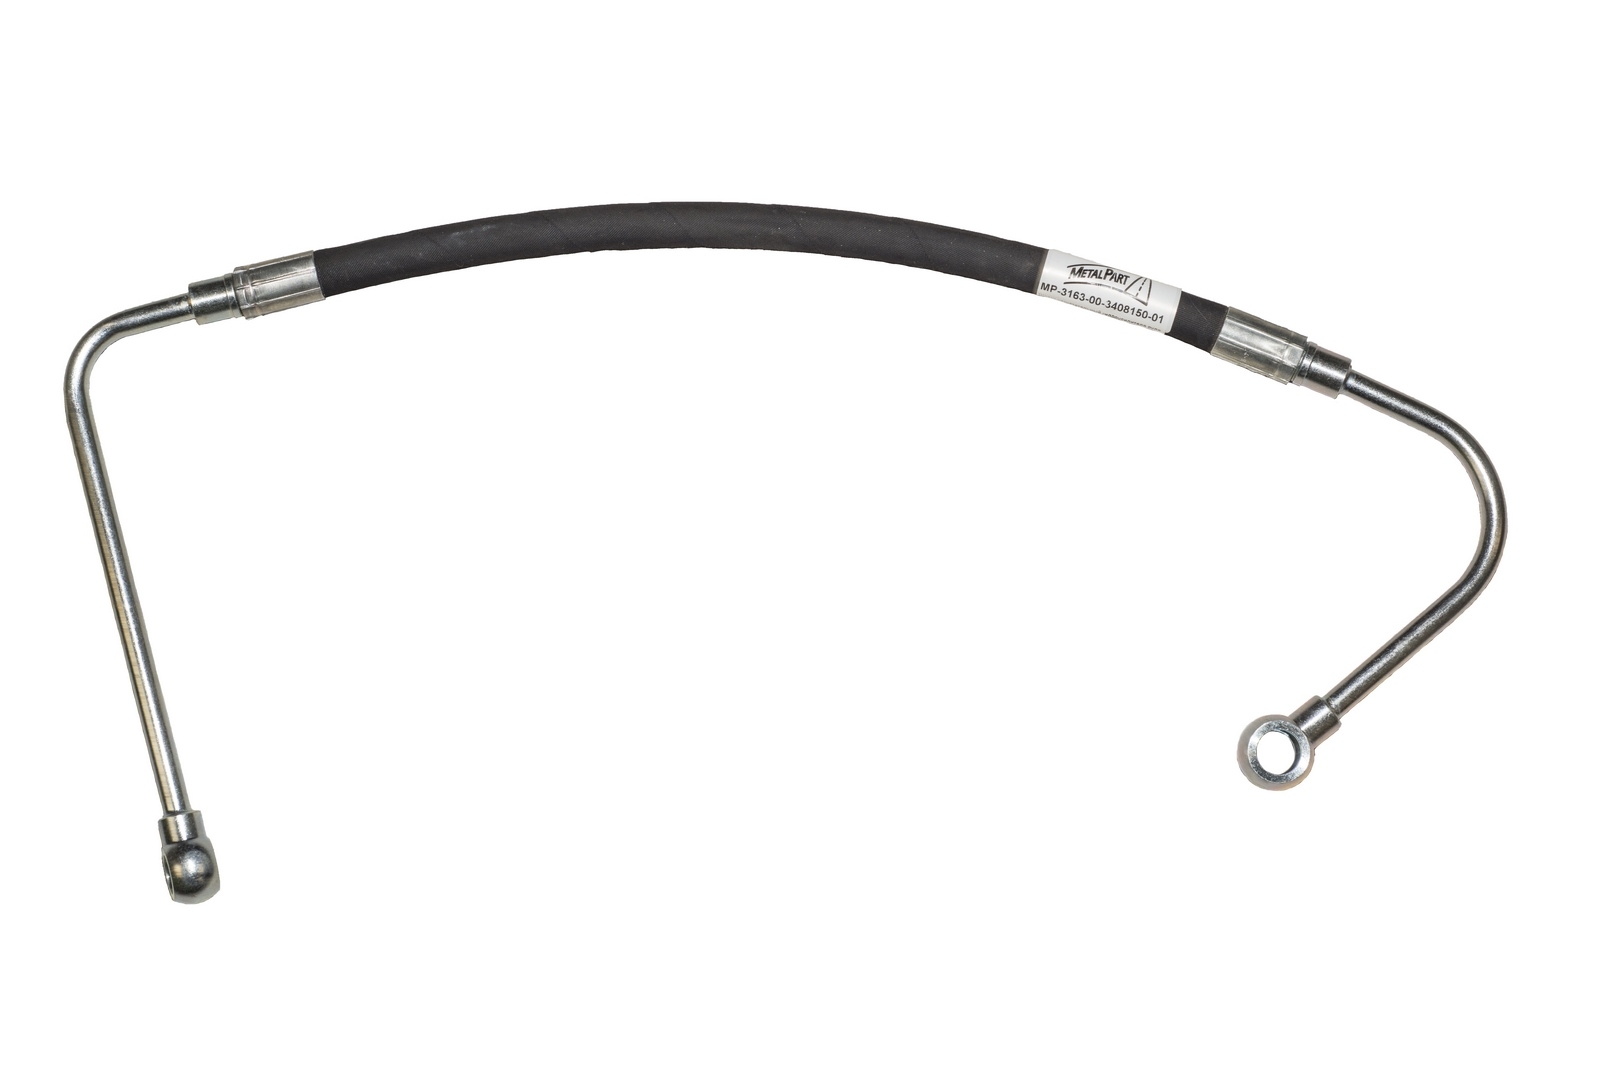 Шланг нагнетательный гидроусилителя руля для автомобилей УАЗ PATRIOT (ЗМЗ-40905, ЕВРО-4, с 06.2014) 